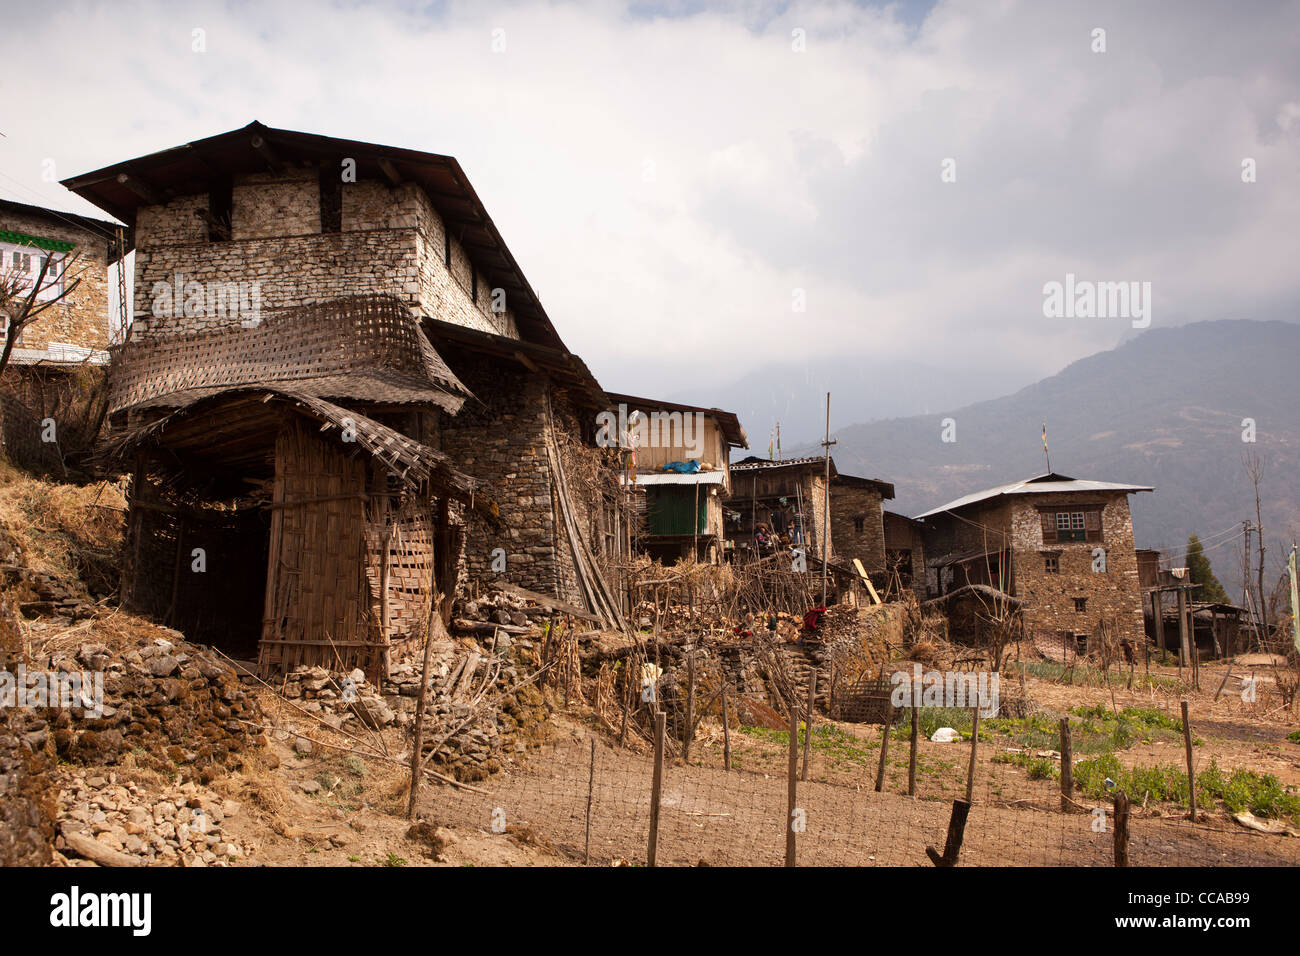 India, Arunachal Pradesh, Tawang Valley, Lhou villaggio tradizionale in pietra costruito case a torre con stalle al di sotto di Foto Stock